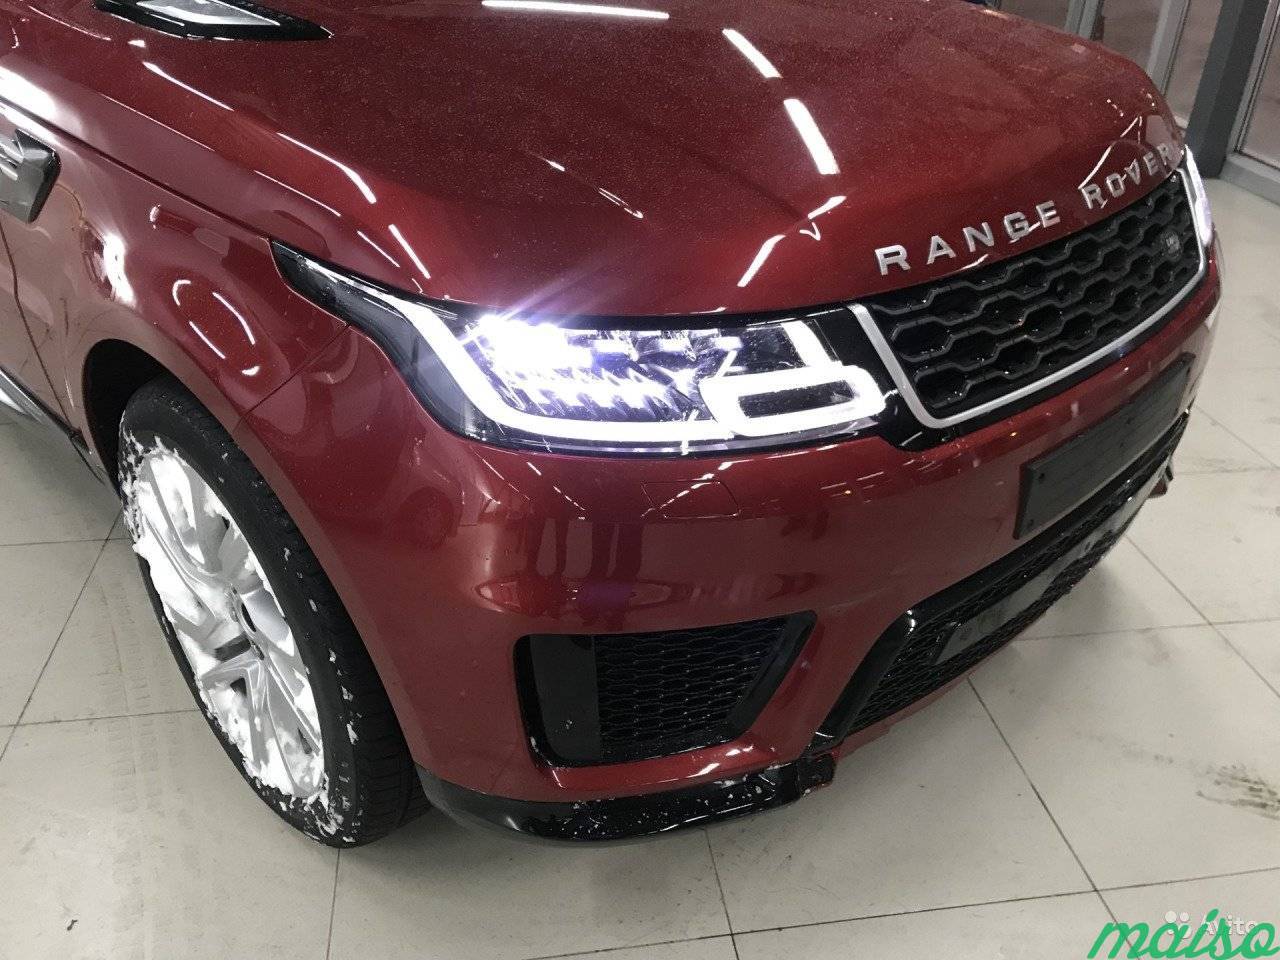 Land Rover Range Rover Sport 3.0 AT, 2018, внедорожник в Санкт-Петербурге. Фото 2